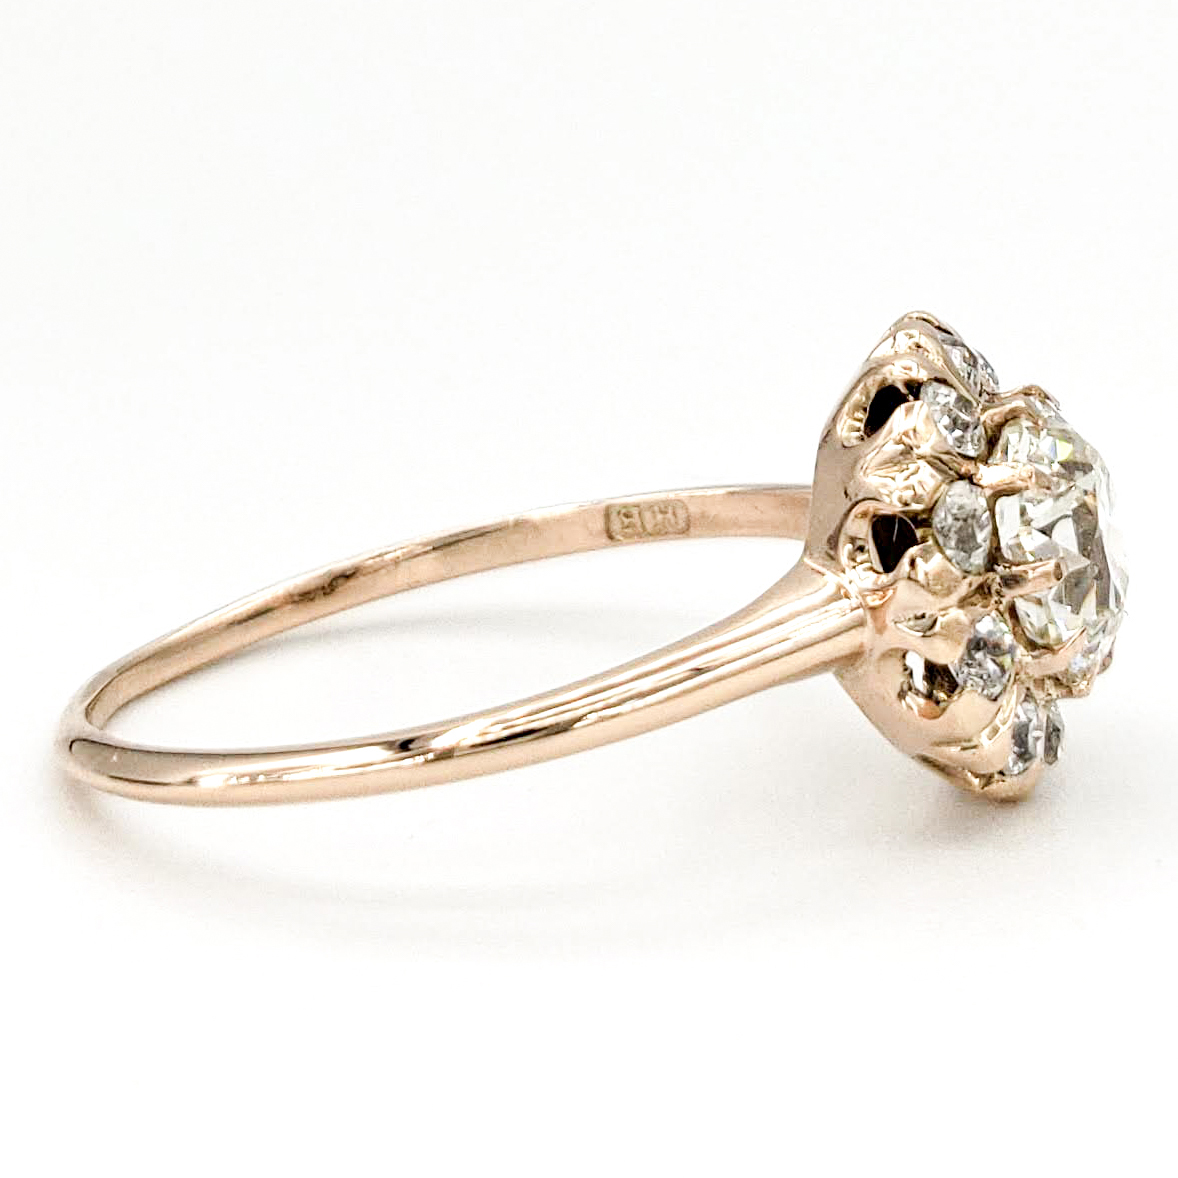 vintage-12-karat-gold-engagement-ring-with-0-93-carat-old-european-cut-diamond-egl-j-si1